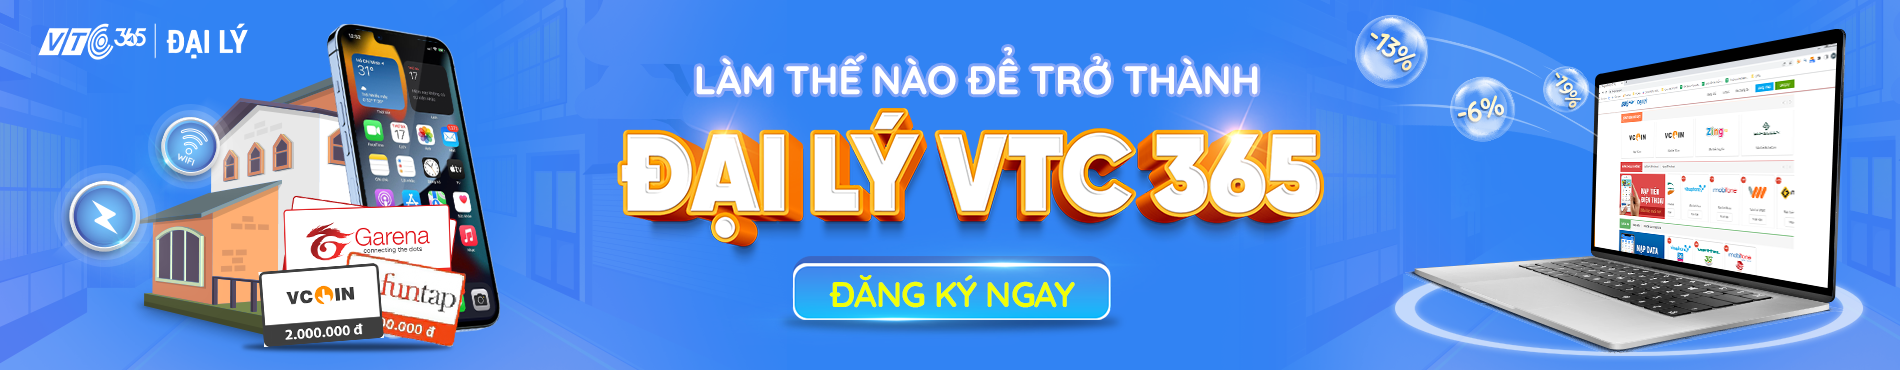 VTC365